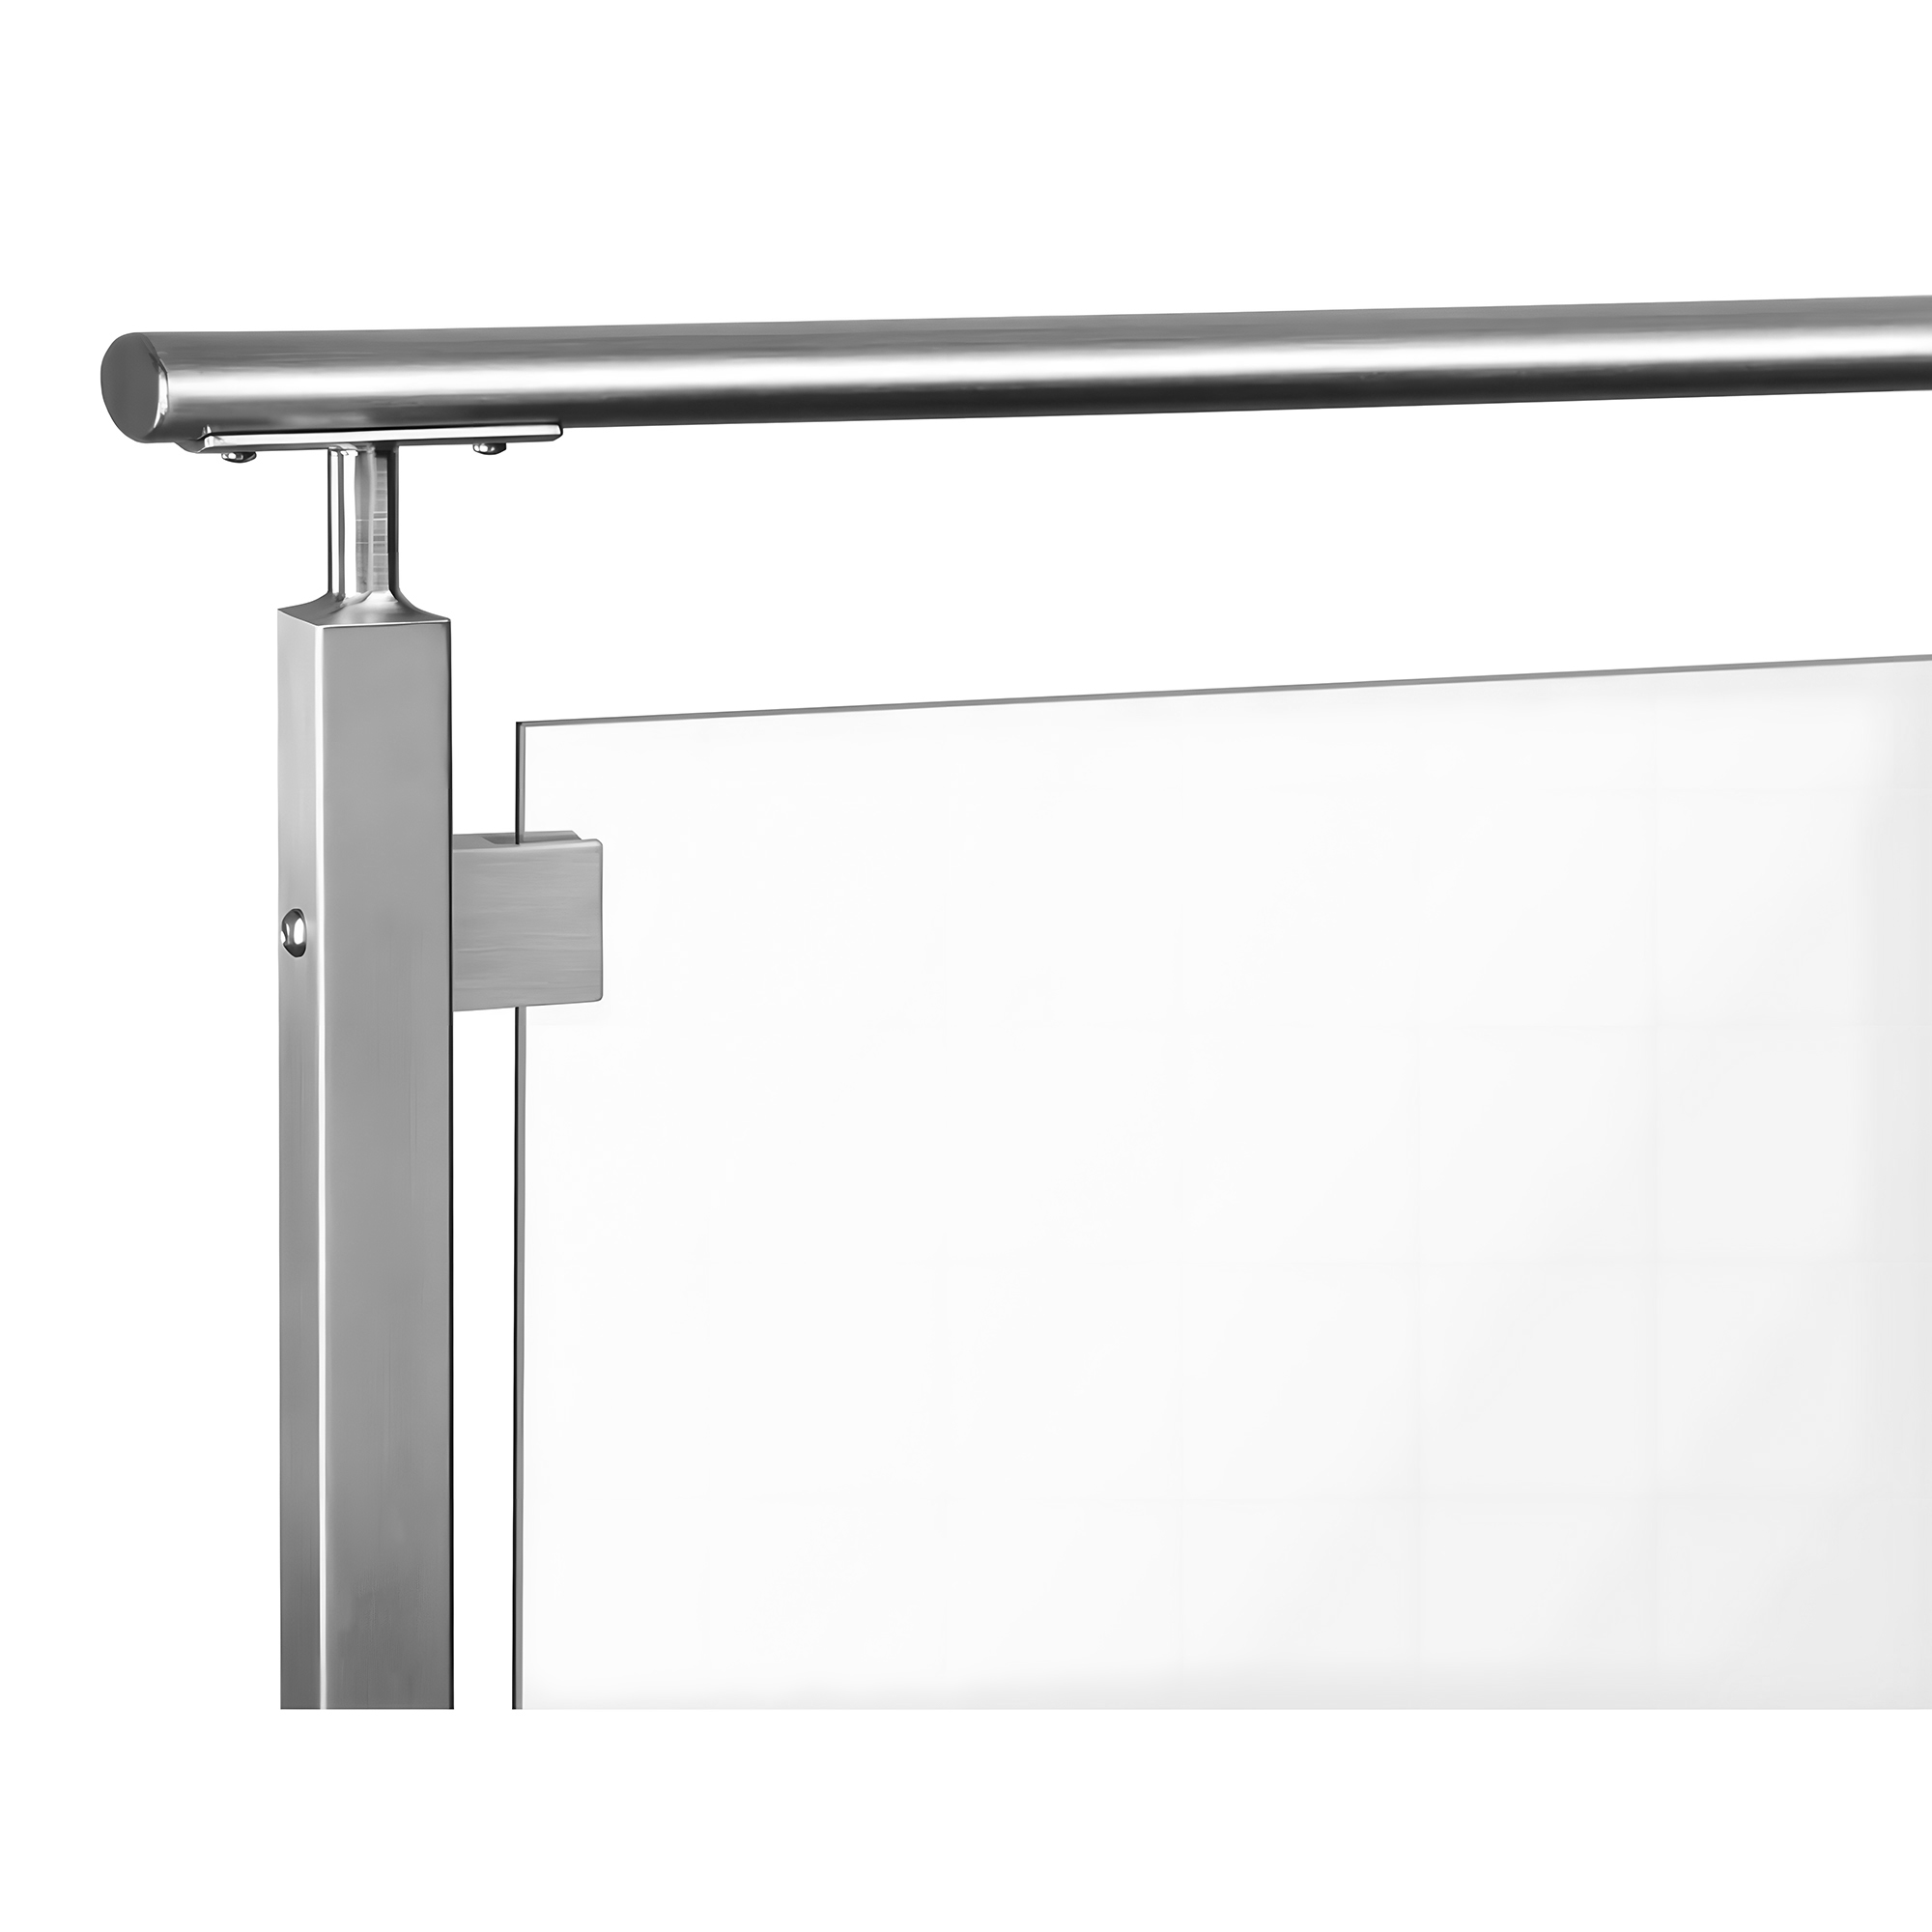 Stainless Steel Handrail Post Kits Glass Balustrade Hardware Modern Design For Balcony Railing